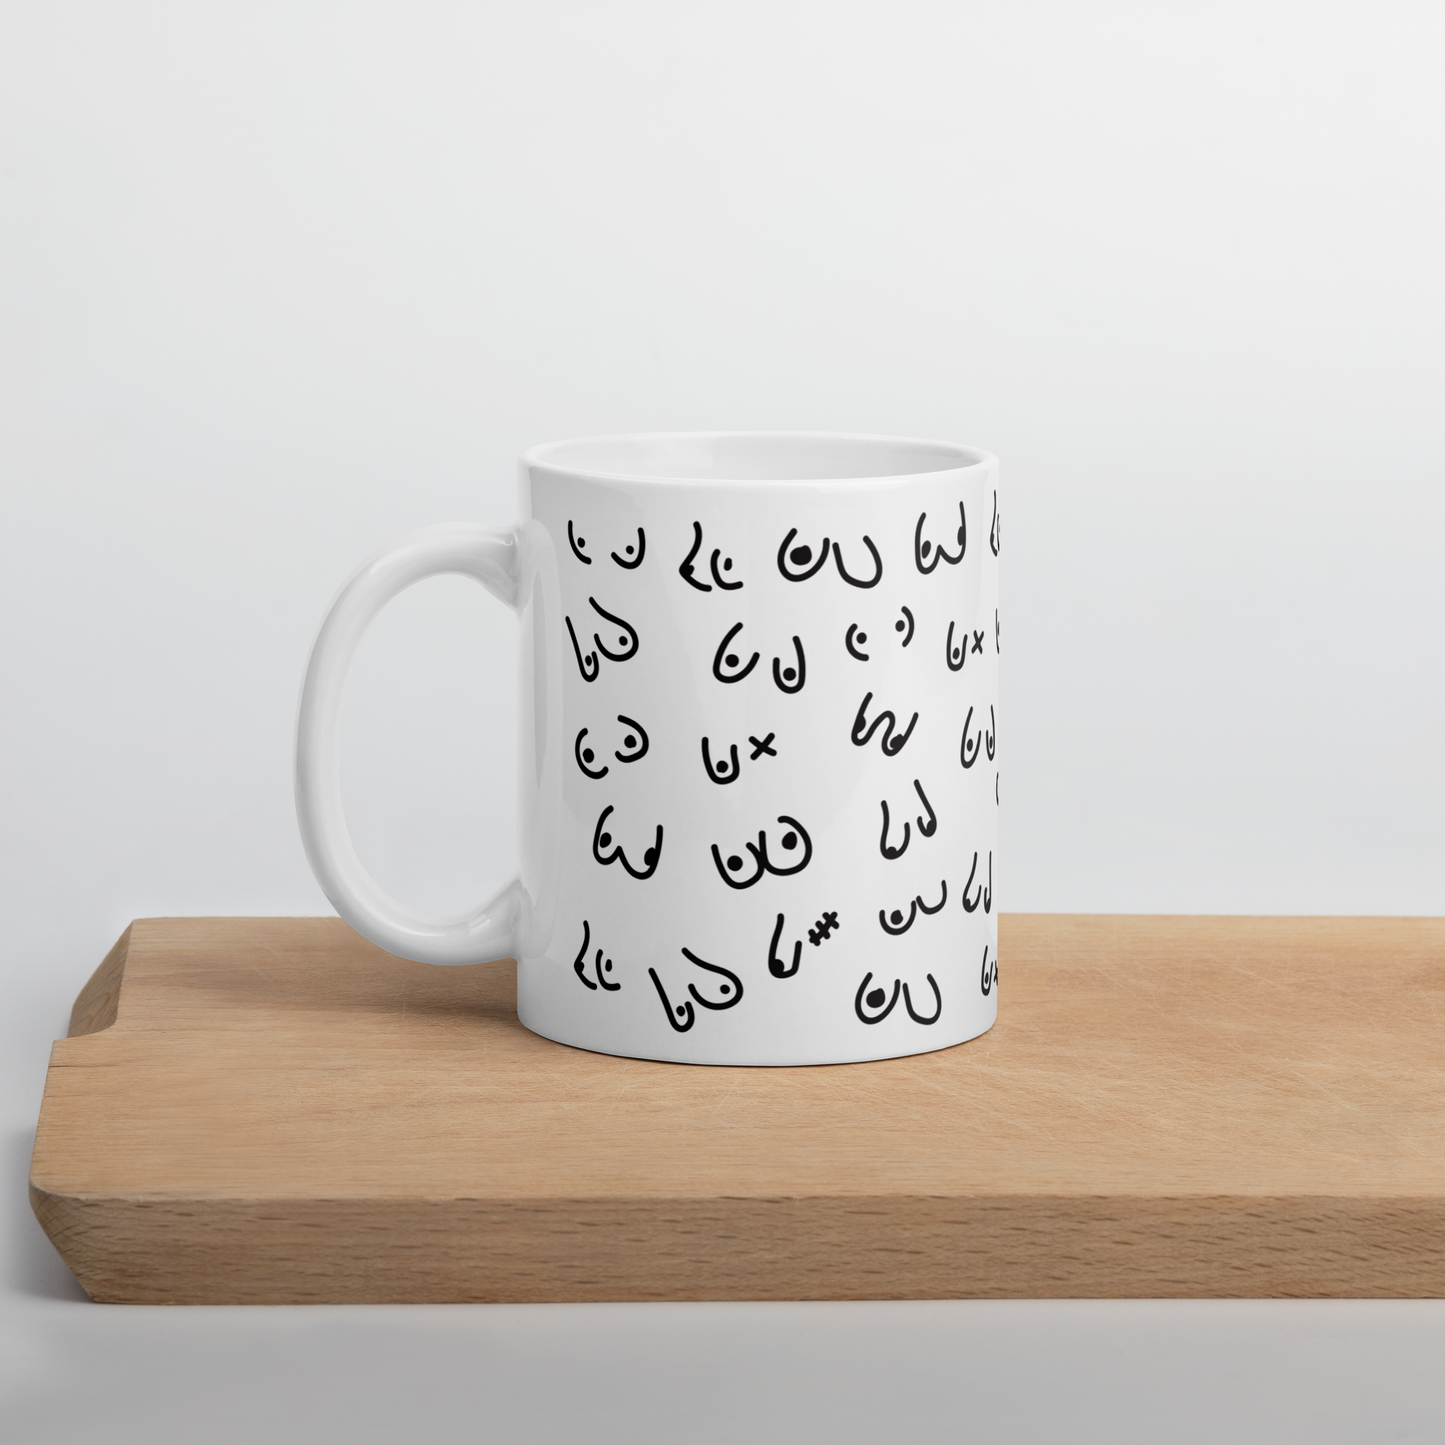 Boobies Coffee Mug